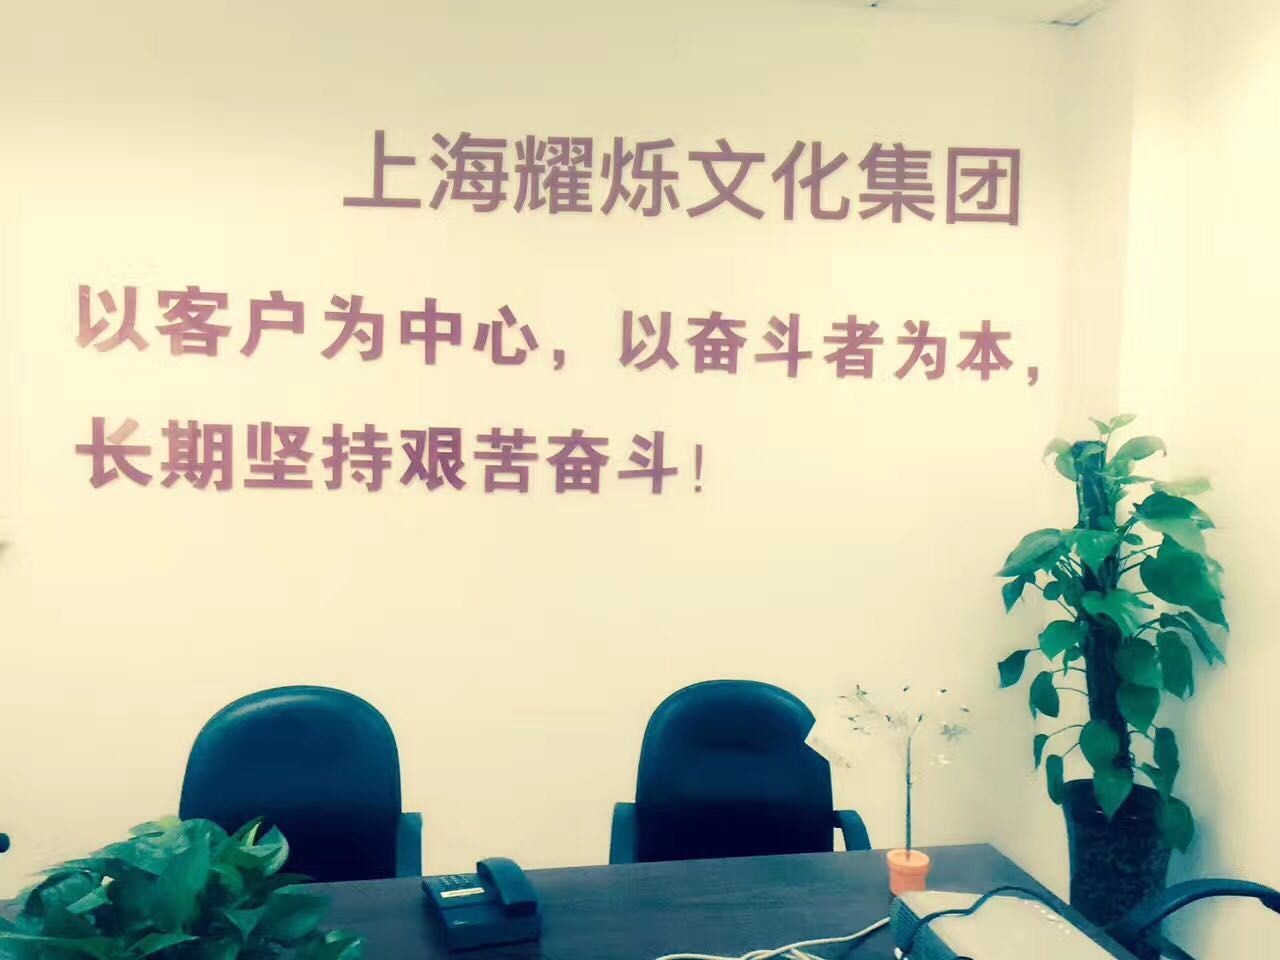 上海耀烁文化传播有限公司